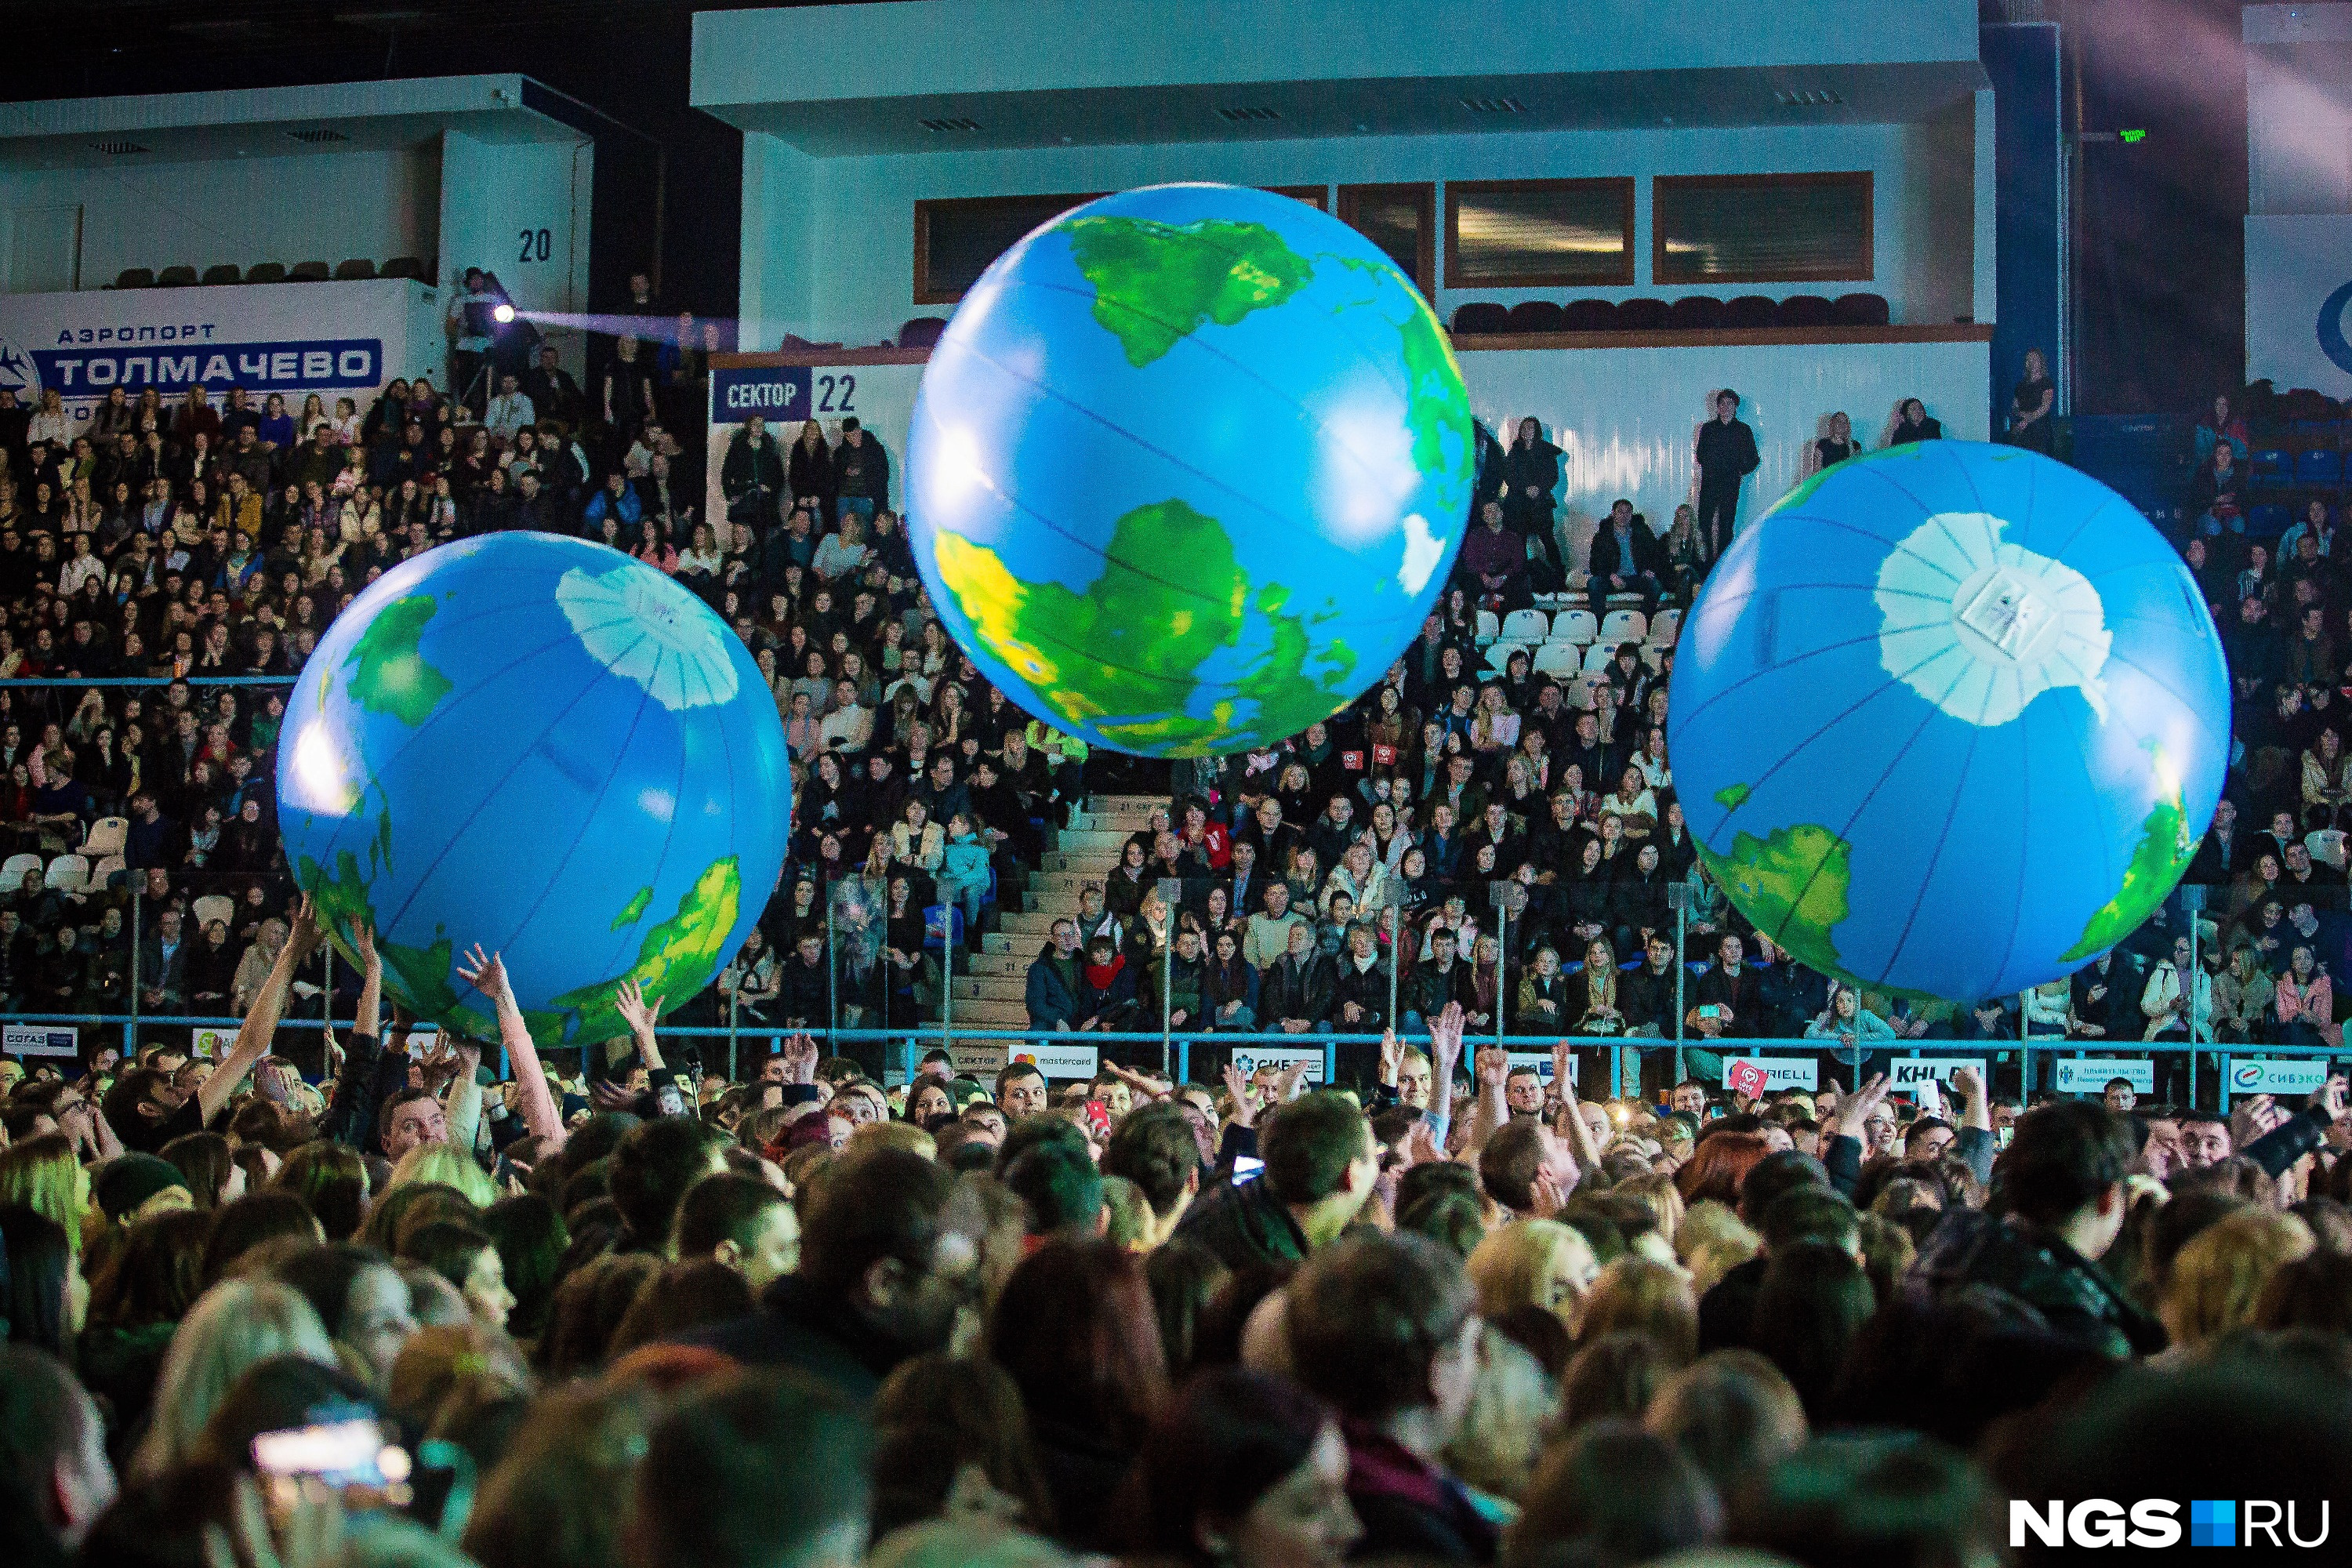 Надувные шары в виде планеты Земля пользовались у зрителей чуть ли не большей популярностью, чем звёзды